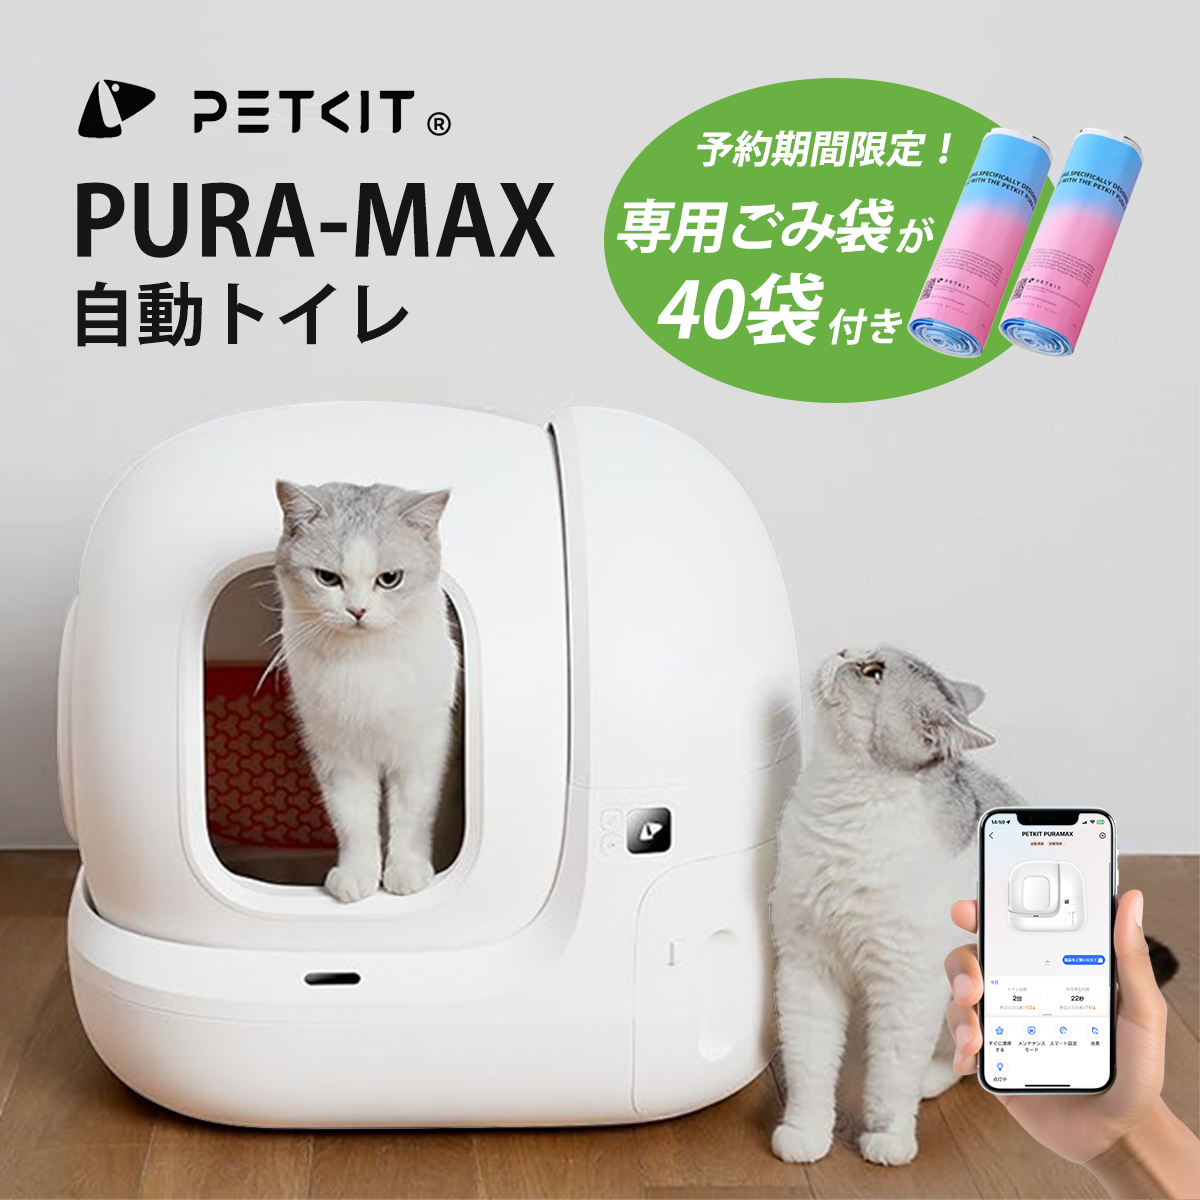 ７月下旬入荷予定【PETKIT-PURA-MAX (高級版) 】自動猫用トイレ ペットキット 自動ネコトイレ【正規品】【安心1年保証】